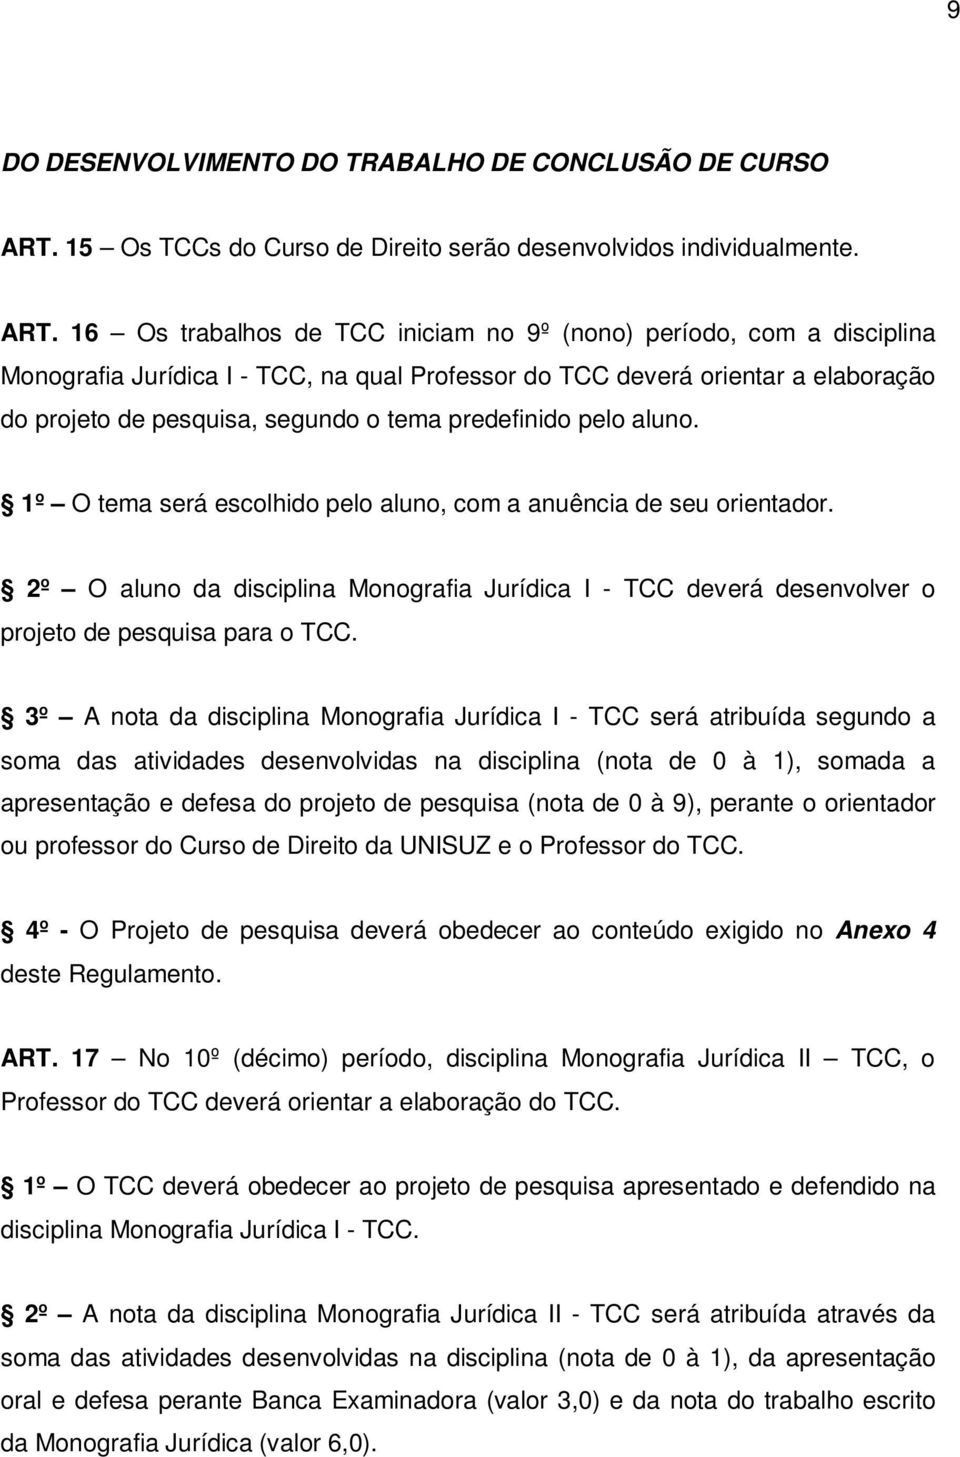 16 Os trabalhos de TCC iniciam no 9º (nono) período, com a disciplina Monografia Jurídica I - TCC, na qual Professor do TCC deverá orientar a elaboração do projeto de pesquisa, segundo o tema